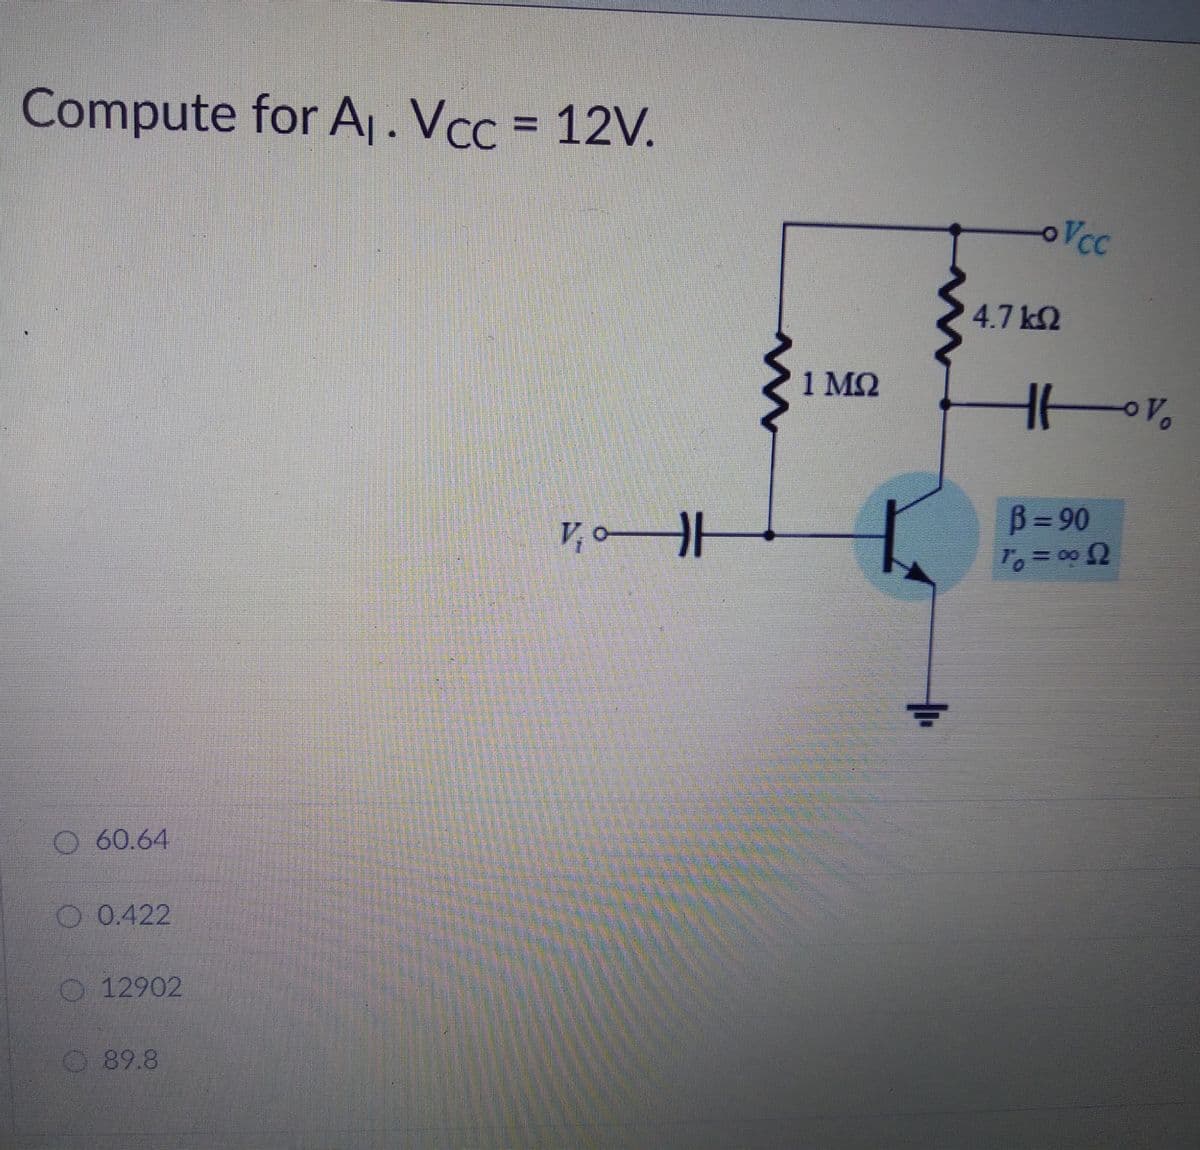 Compute for A,. Vcc = 12V.
%3D
oVcc
4.7 k2
1 MQ
V,0HH
B= 90
O 60.64
O 0.422
O 12902
89.8
